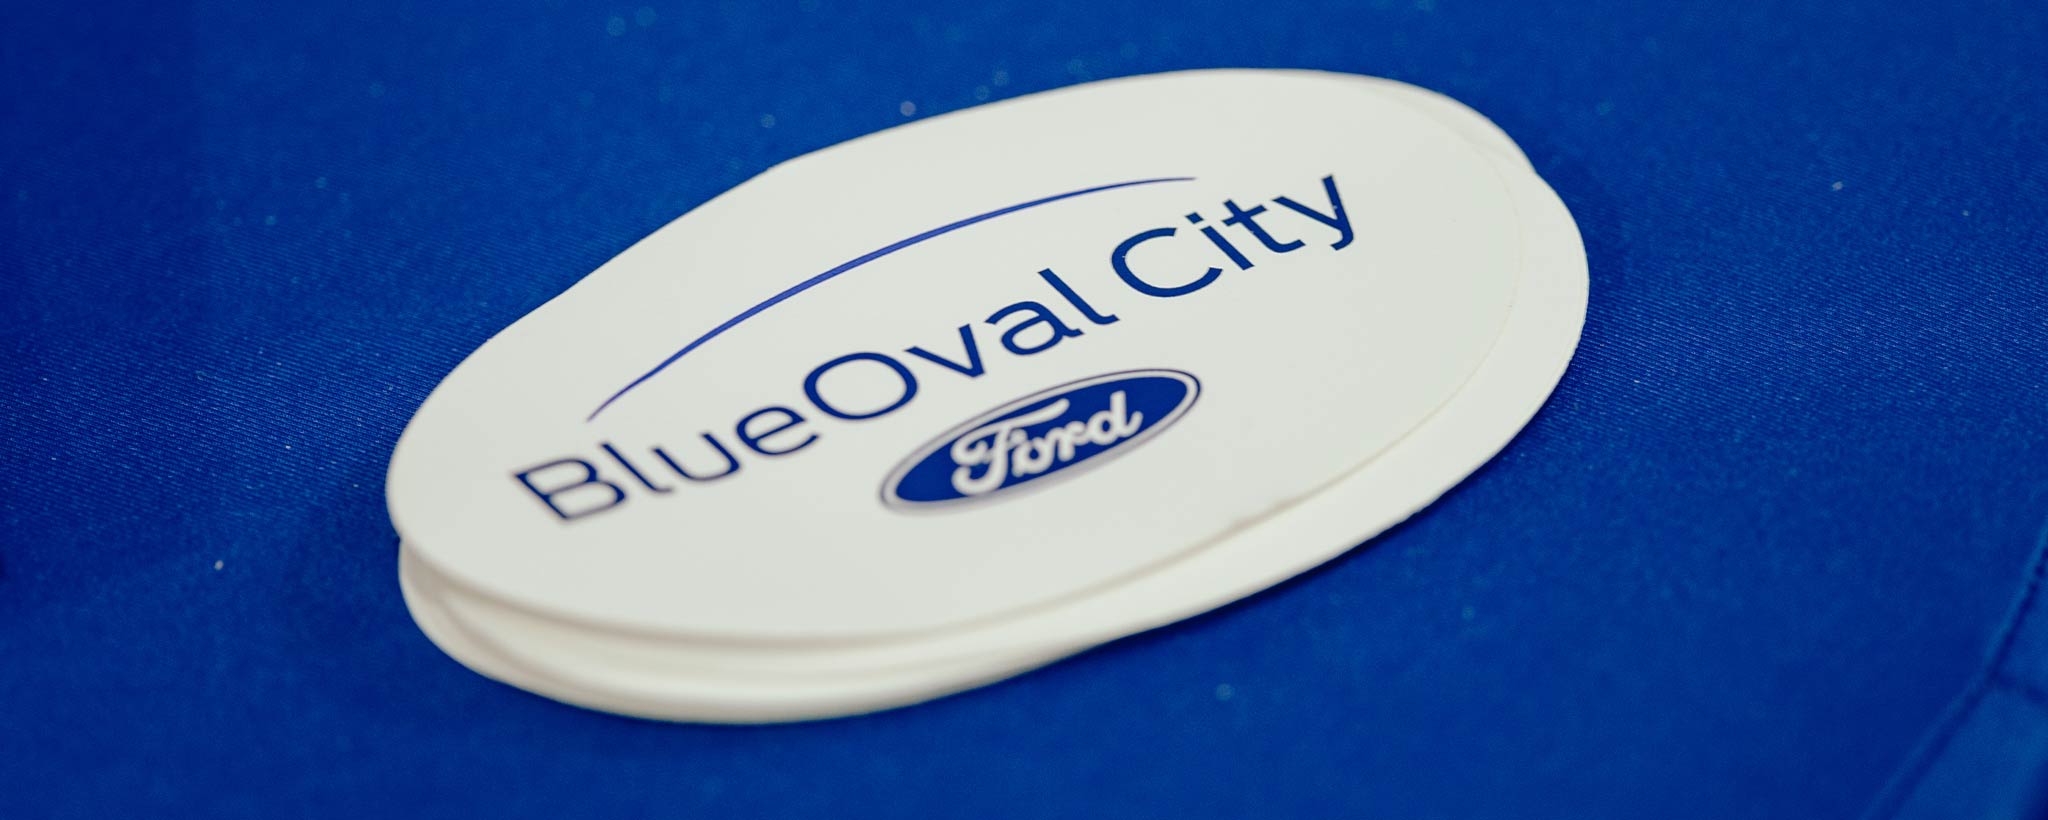 Blue Oval City Logo